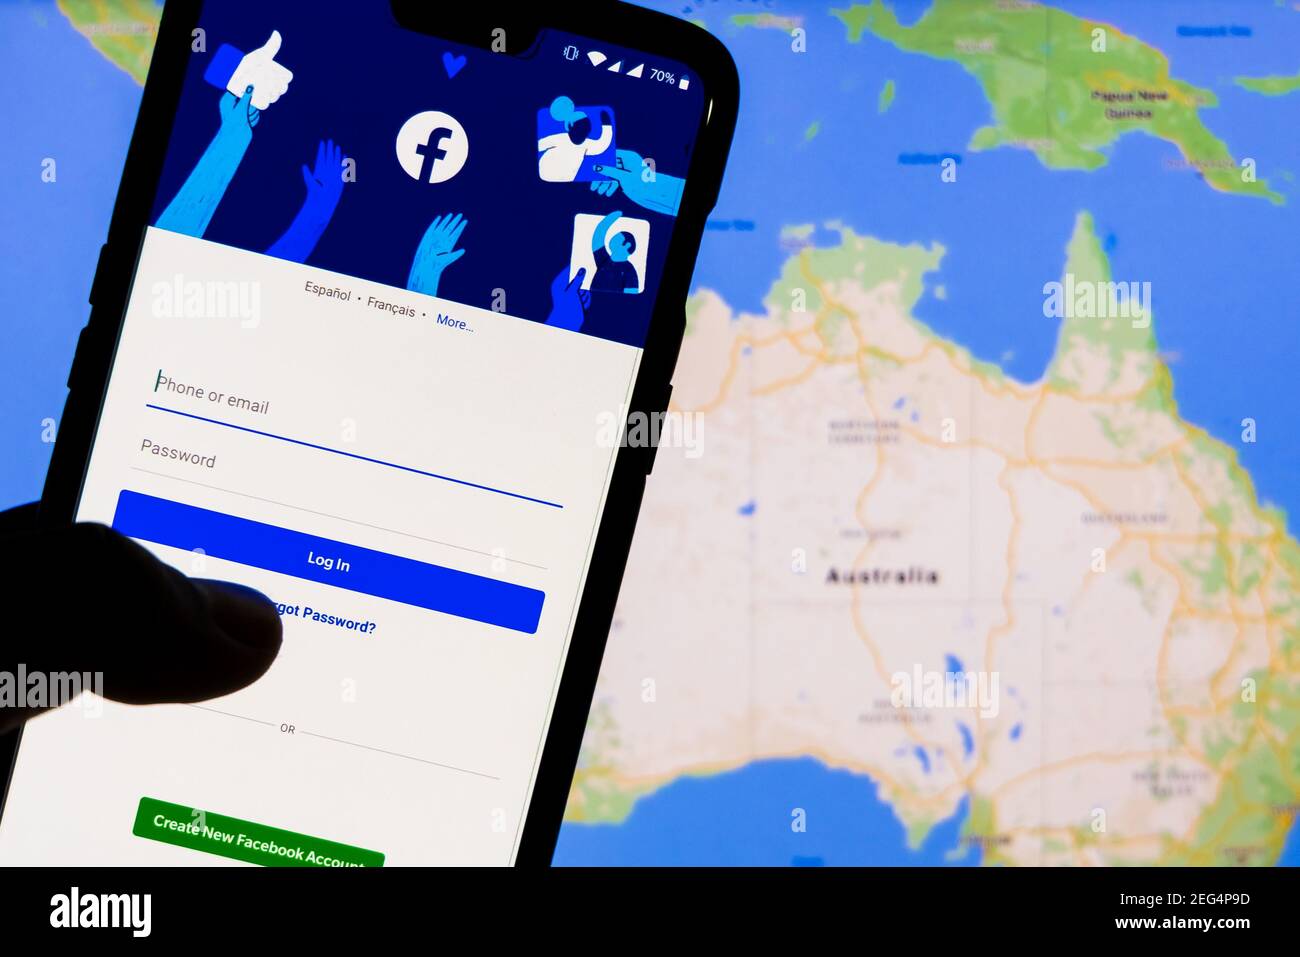 Kathmandu, Nepal - Februar 18 2021: Smartphone mit Facebook-Login-Bildschirm gegen die Karten von Australien auf einem pc-Computer im Hintergrund. Stockfoto